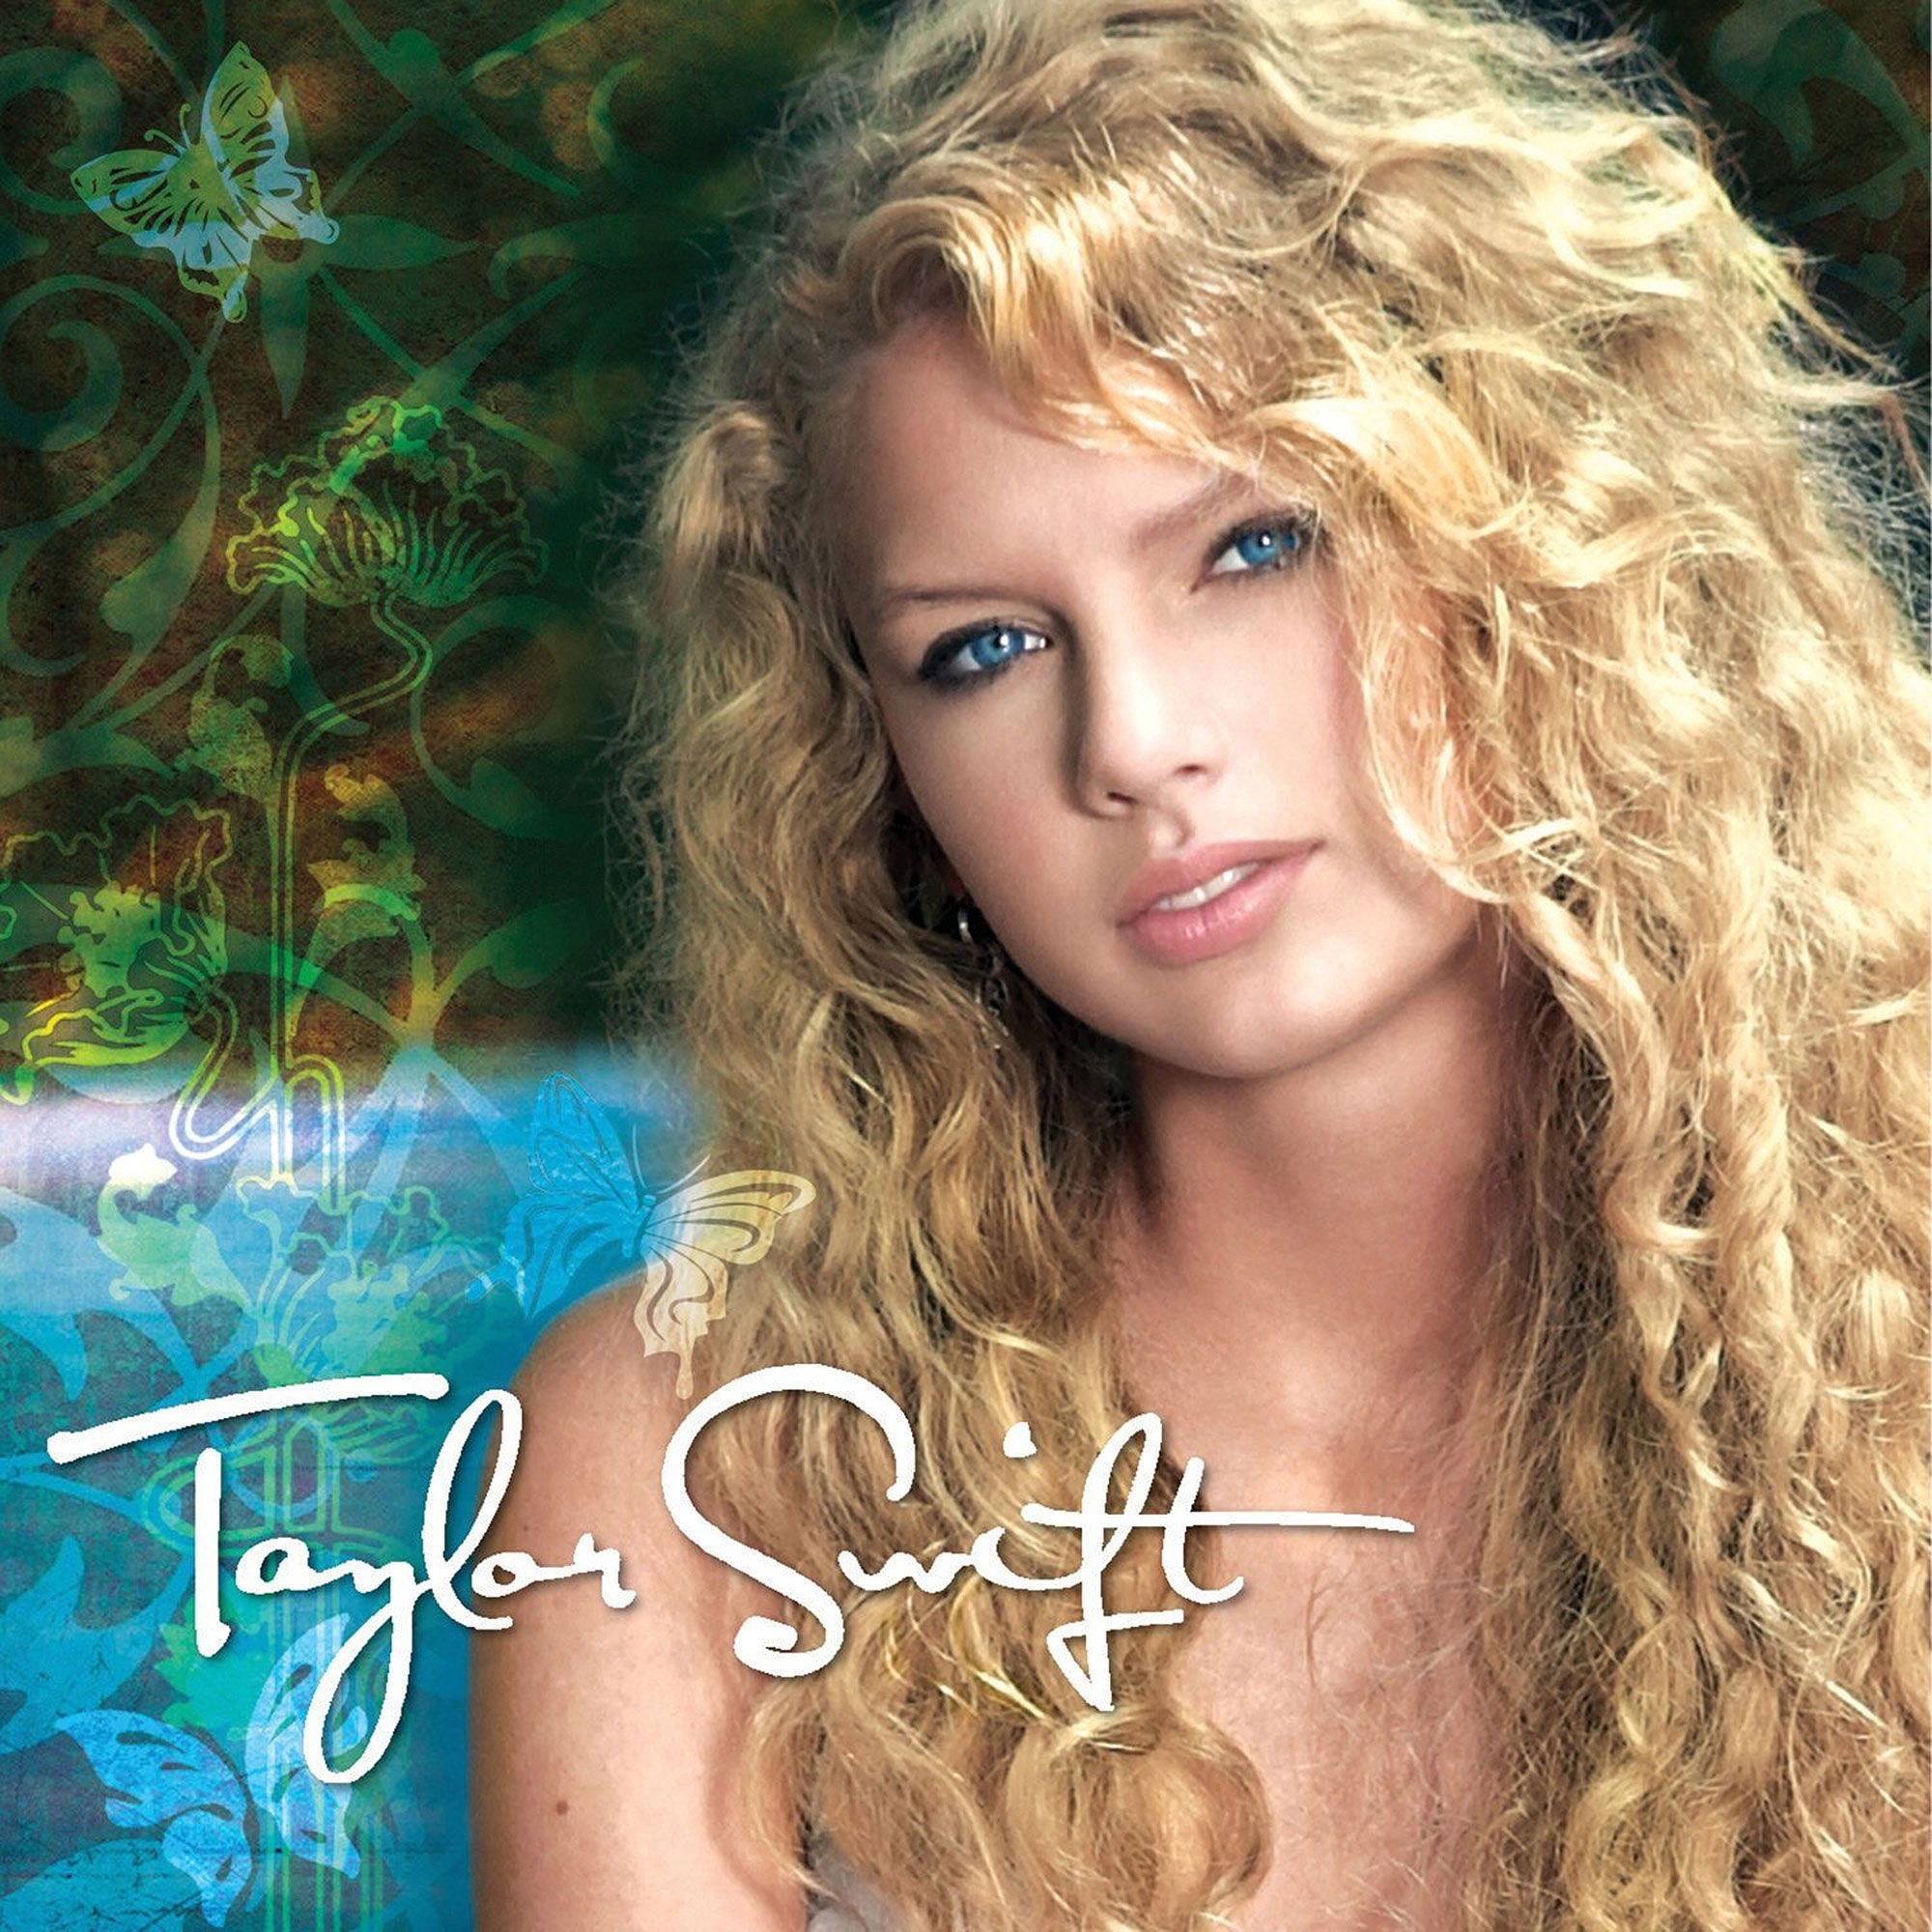 Fearless, Taylor Swift Wiki